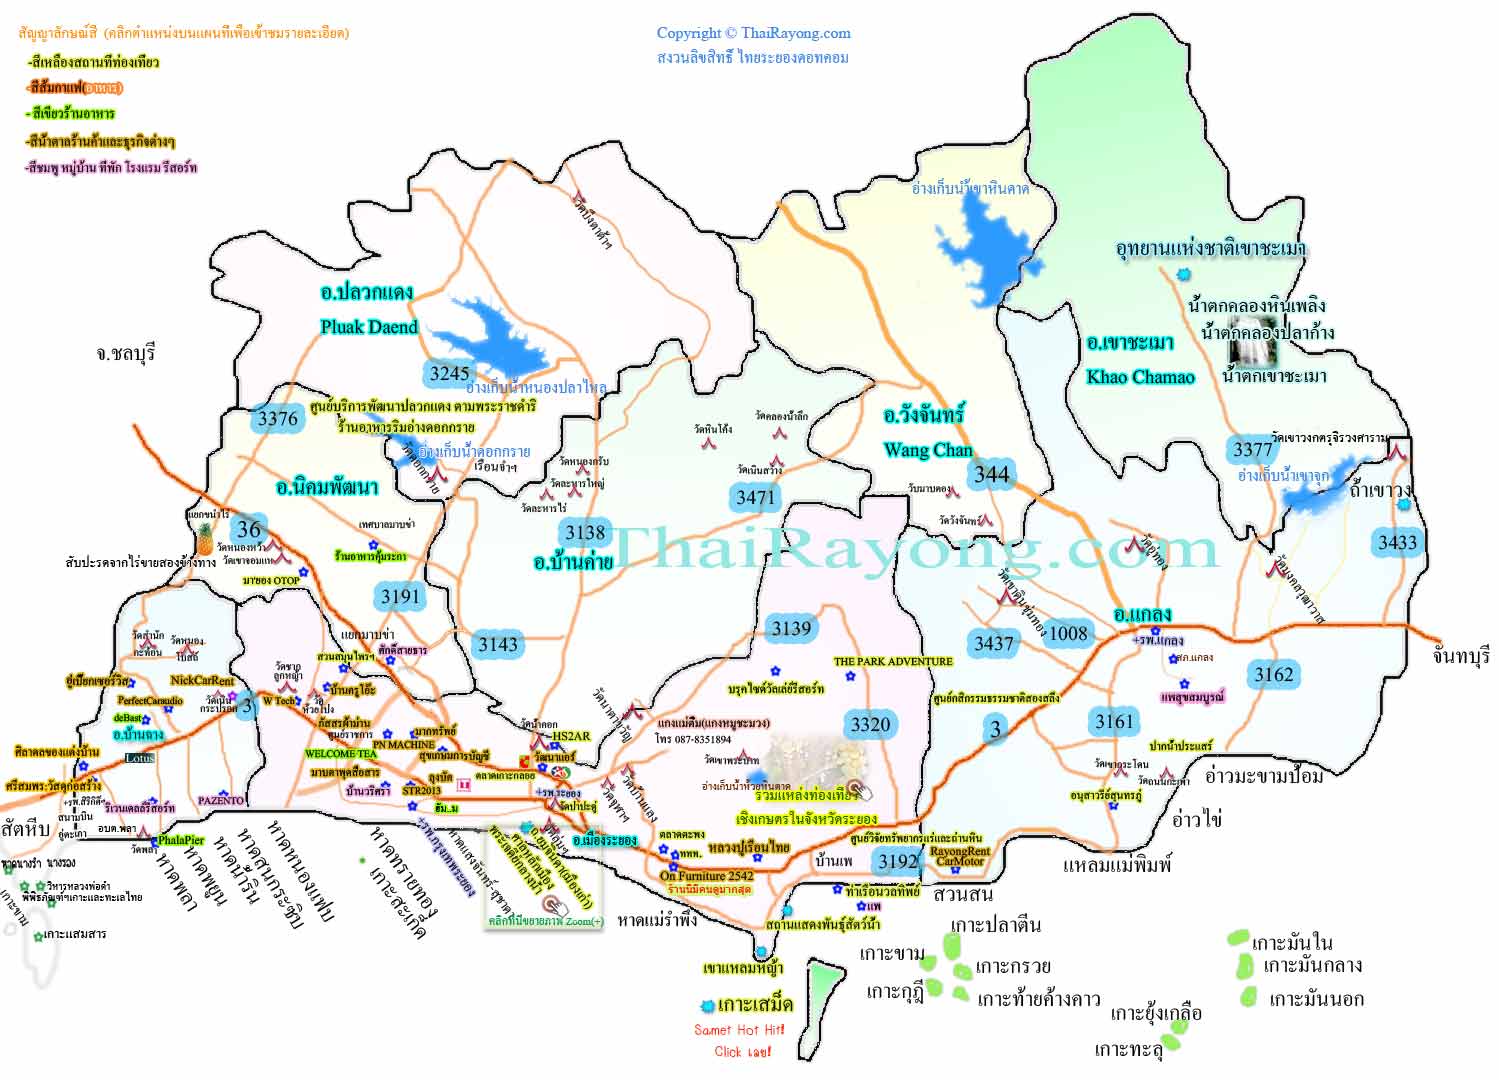 Thai Rayong map แผนที่ระยอง 